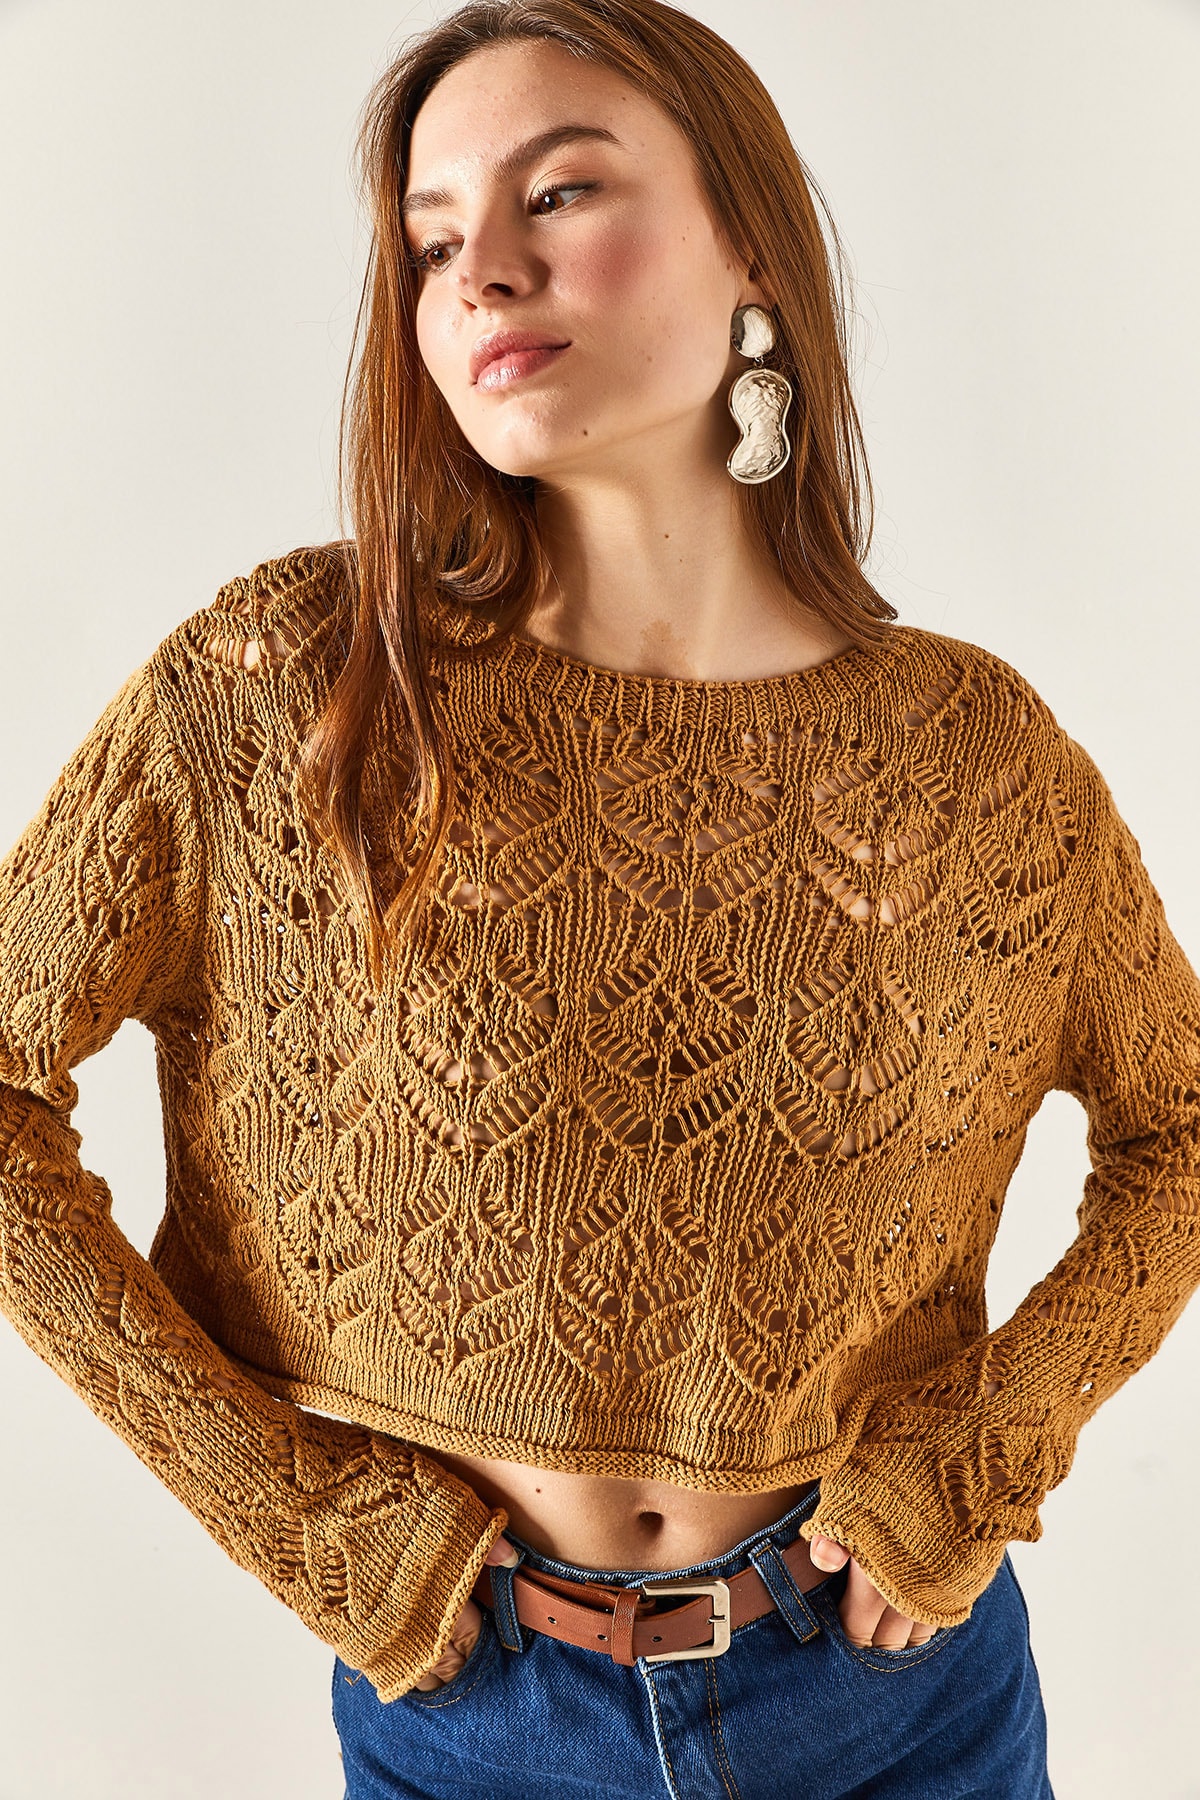 Женская ажурная укороченная трикотажная блузка с бисквитным вырезом на спине Olalook, коричневый